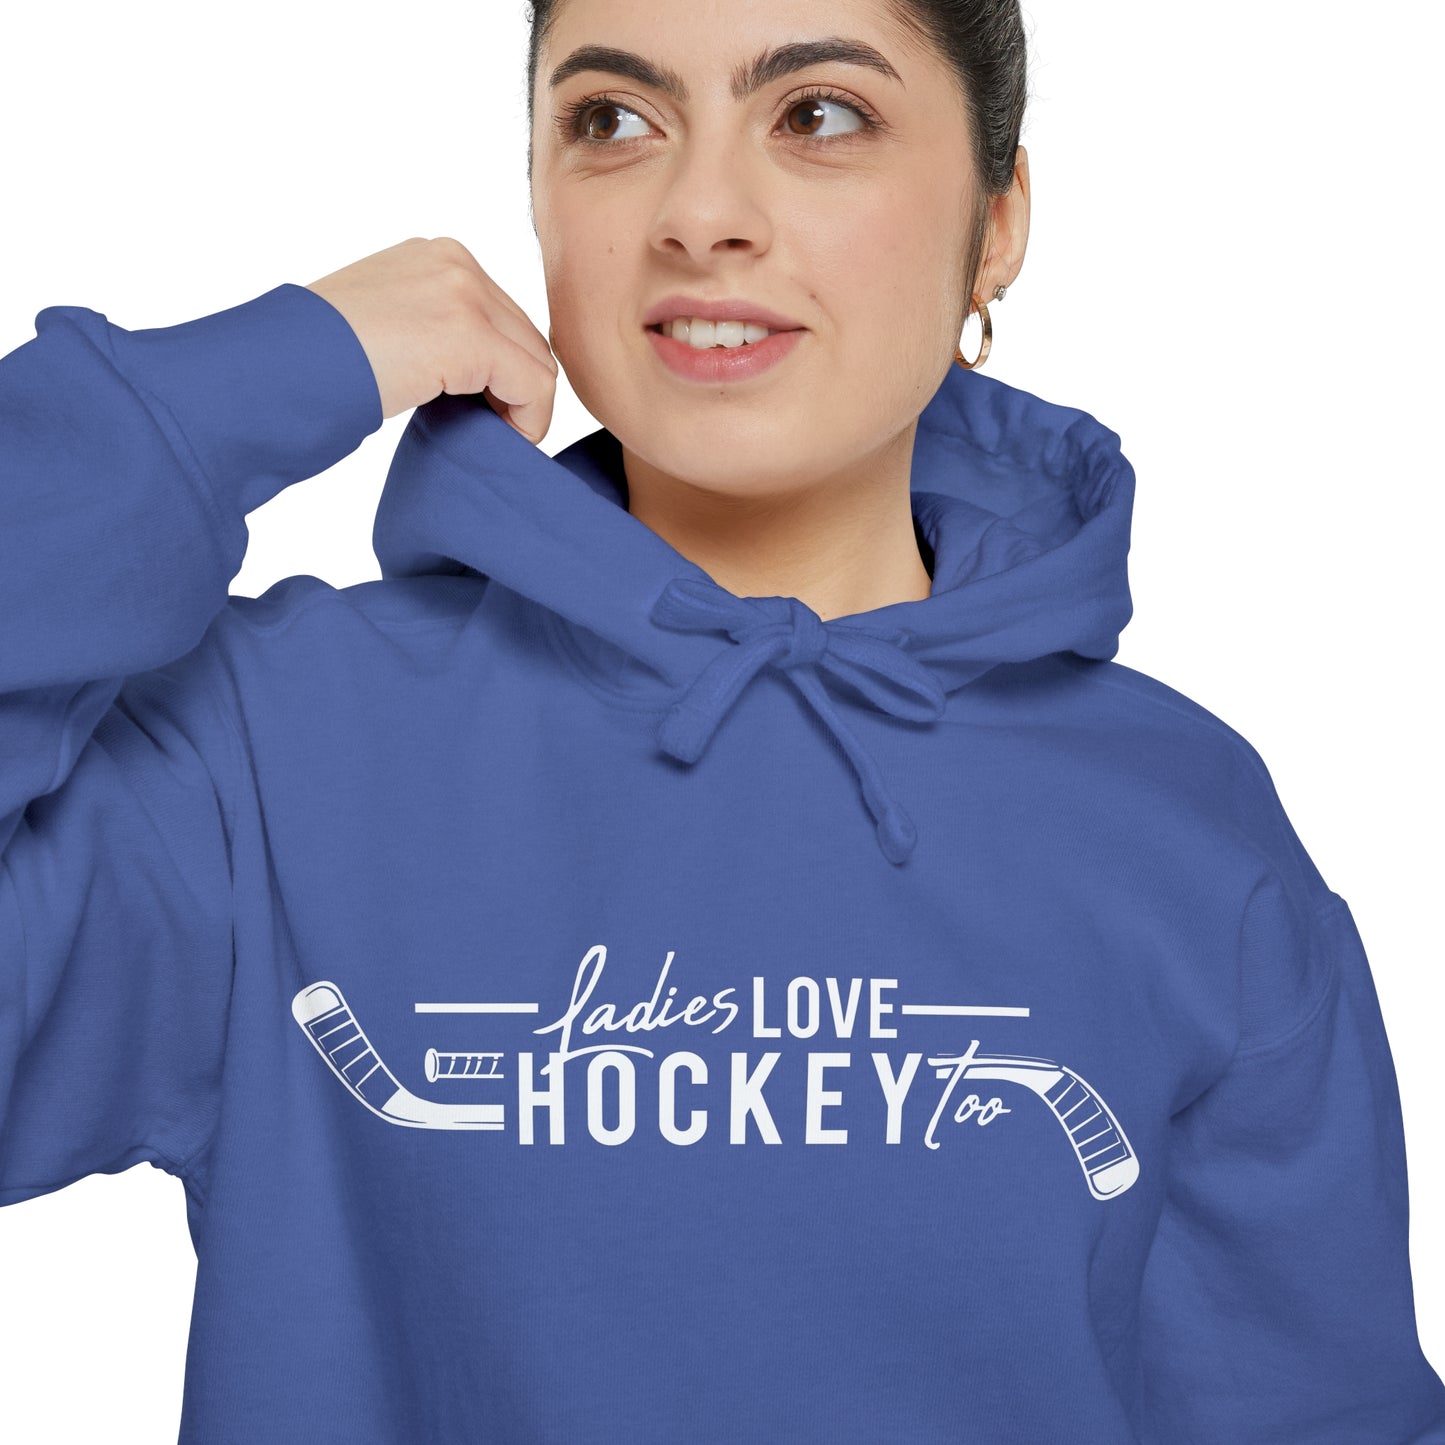 Ladies Love Hockey Too Unisex Comfort Colors Hoodie